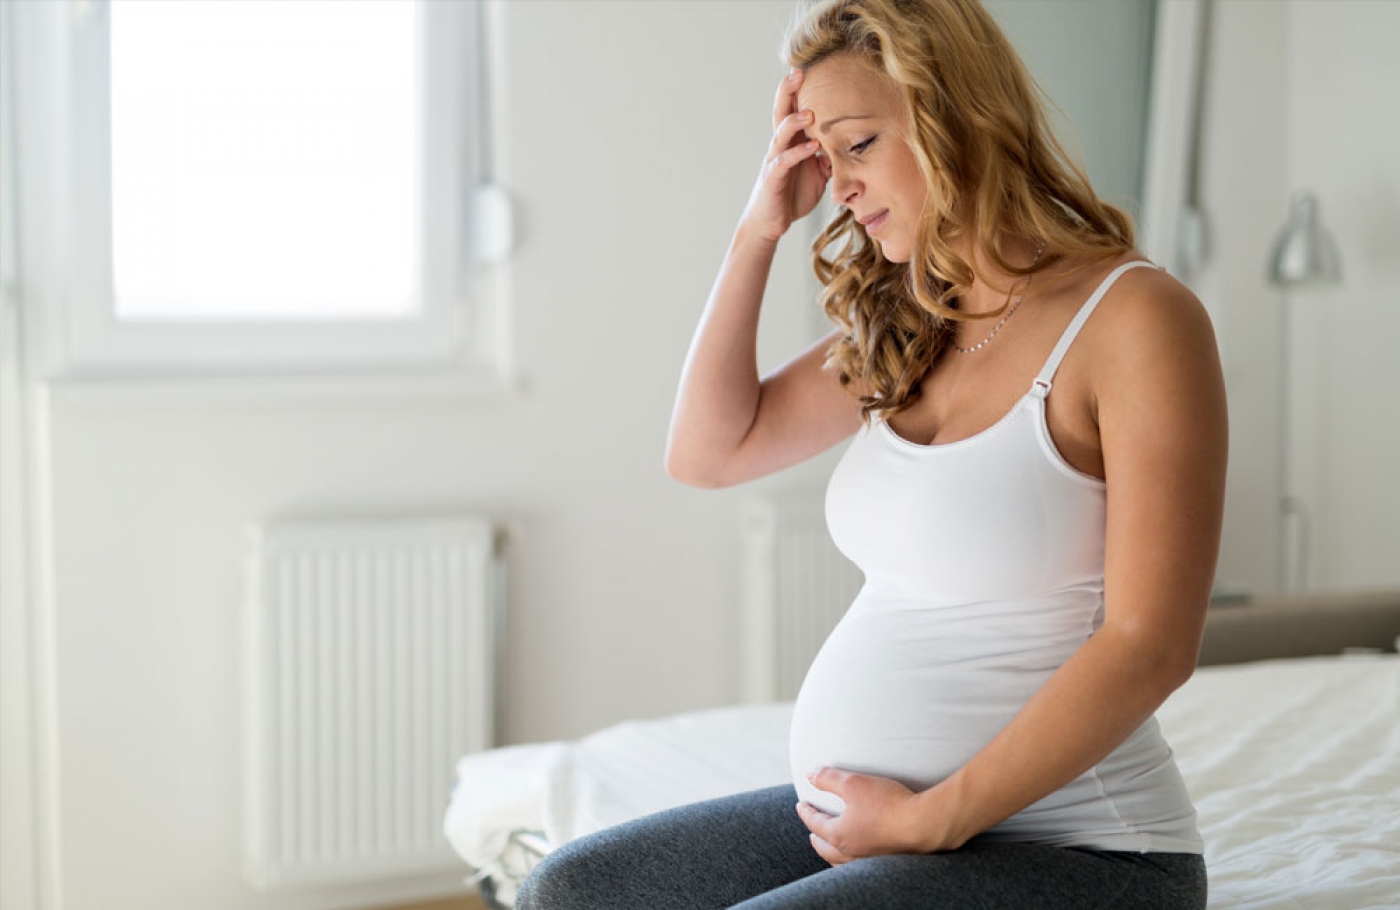 Το στρες στην εγκυμοσύνη επηρεάζει την ανάπτυξη του εμβρύου